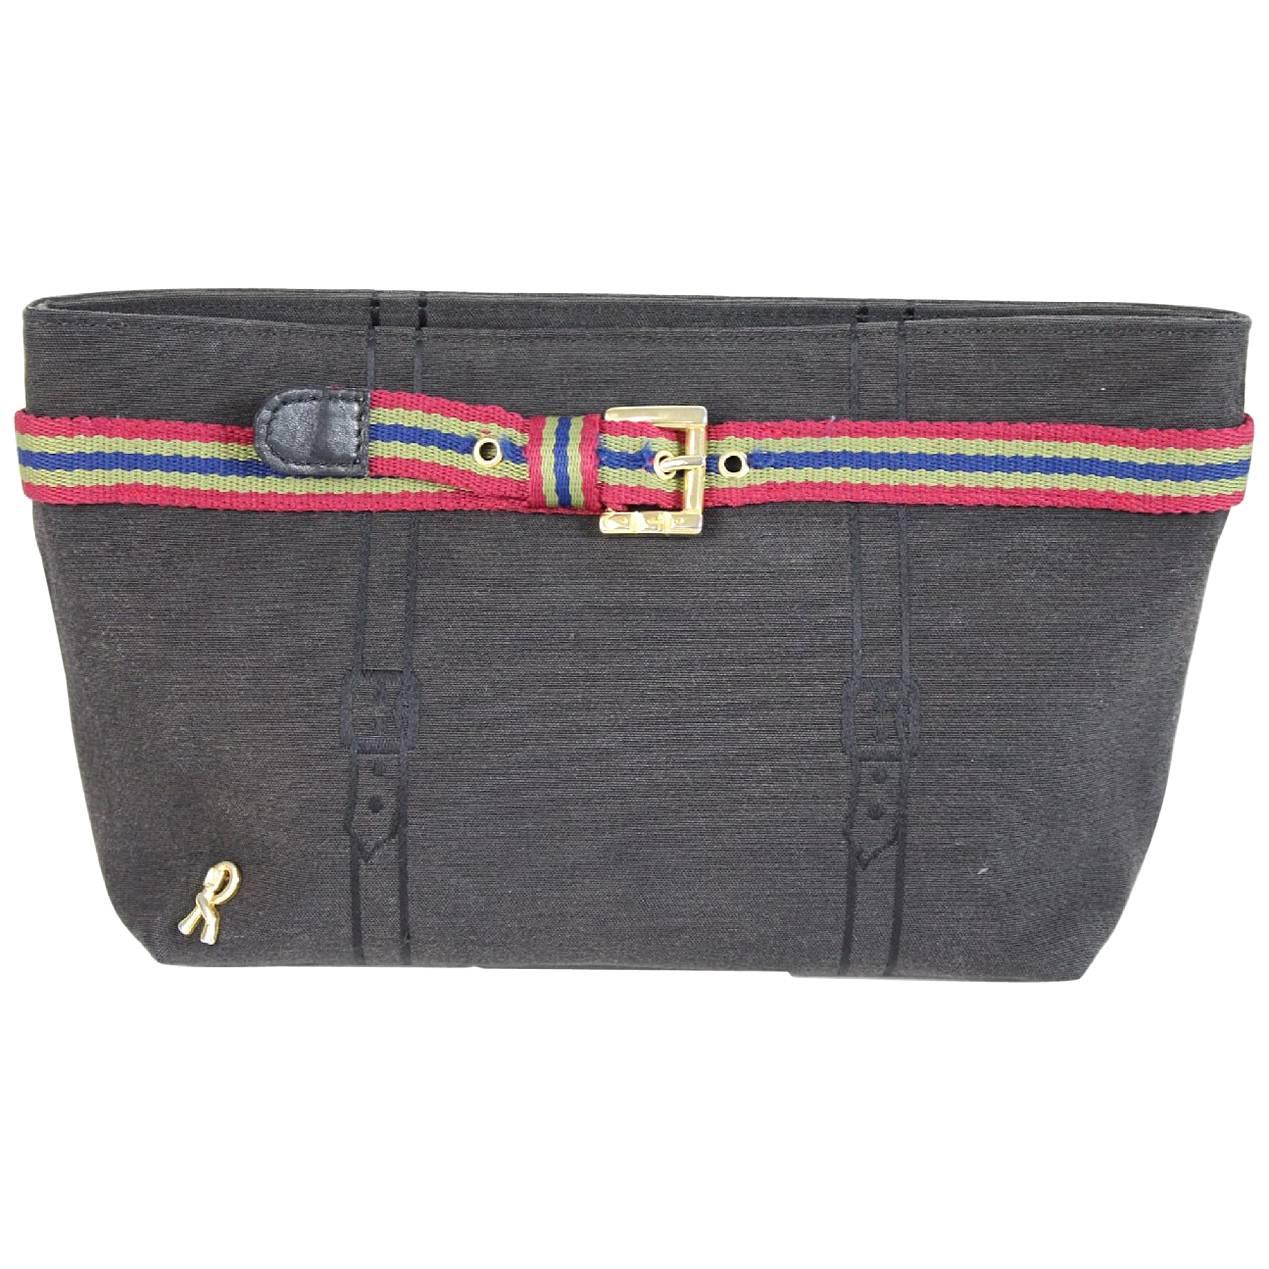 Roberta di Camerino black cotton pochette handbag 1980s italy vintage clutche For Sale